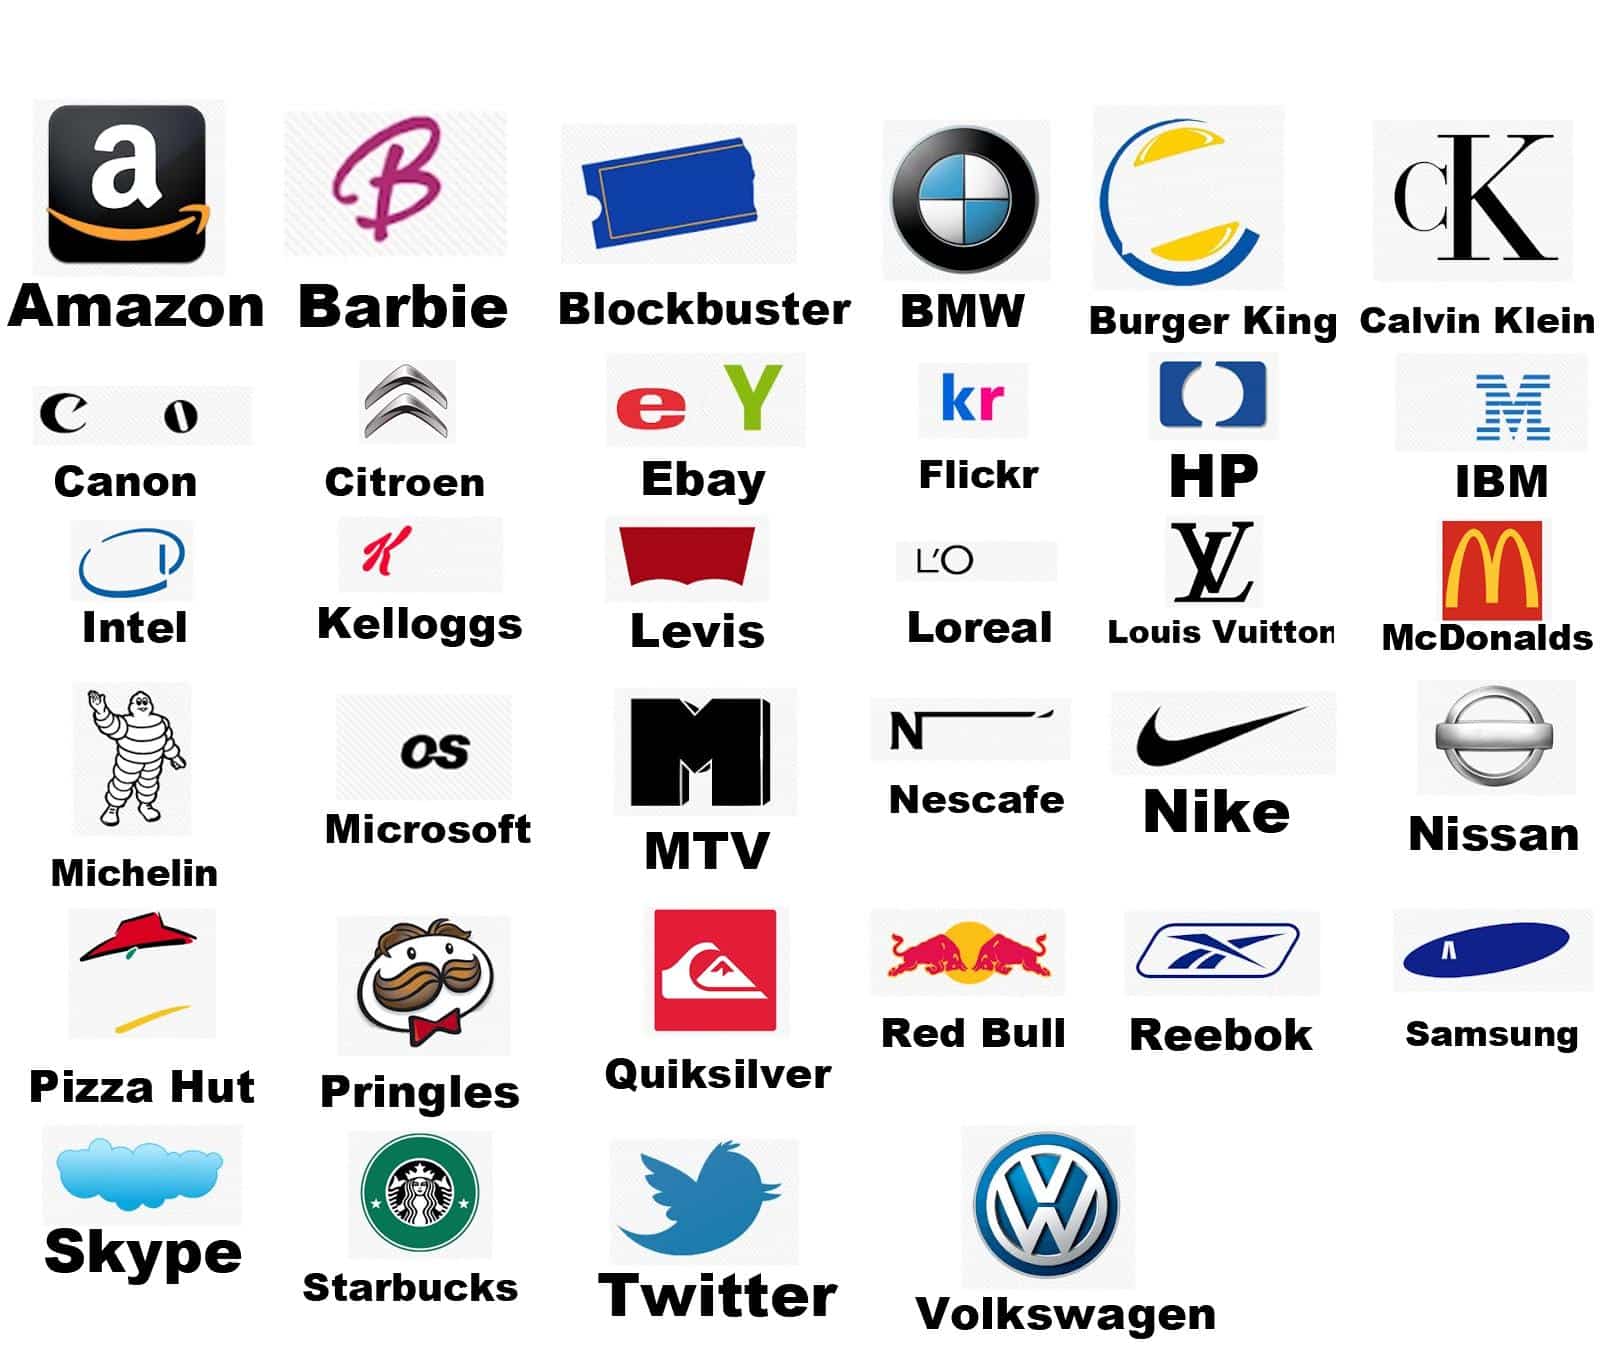 Названия на букву n. Эмблемы брендов. Логотипы известных брендов. Логотипы знаменитых брендов. Популярные марки.